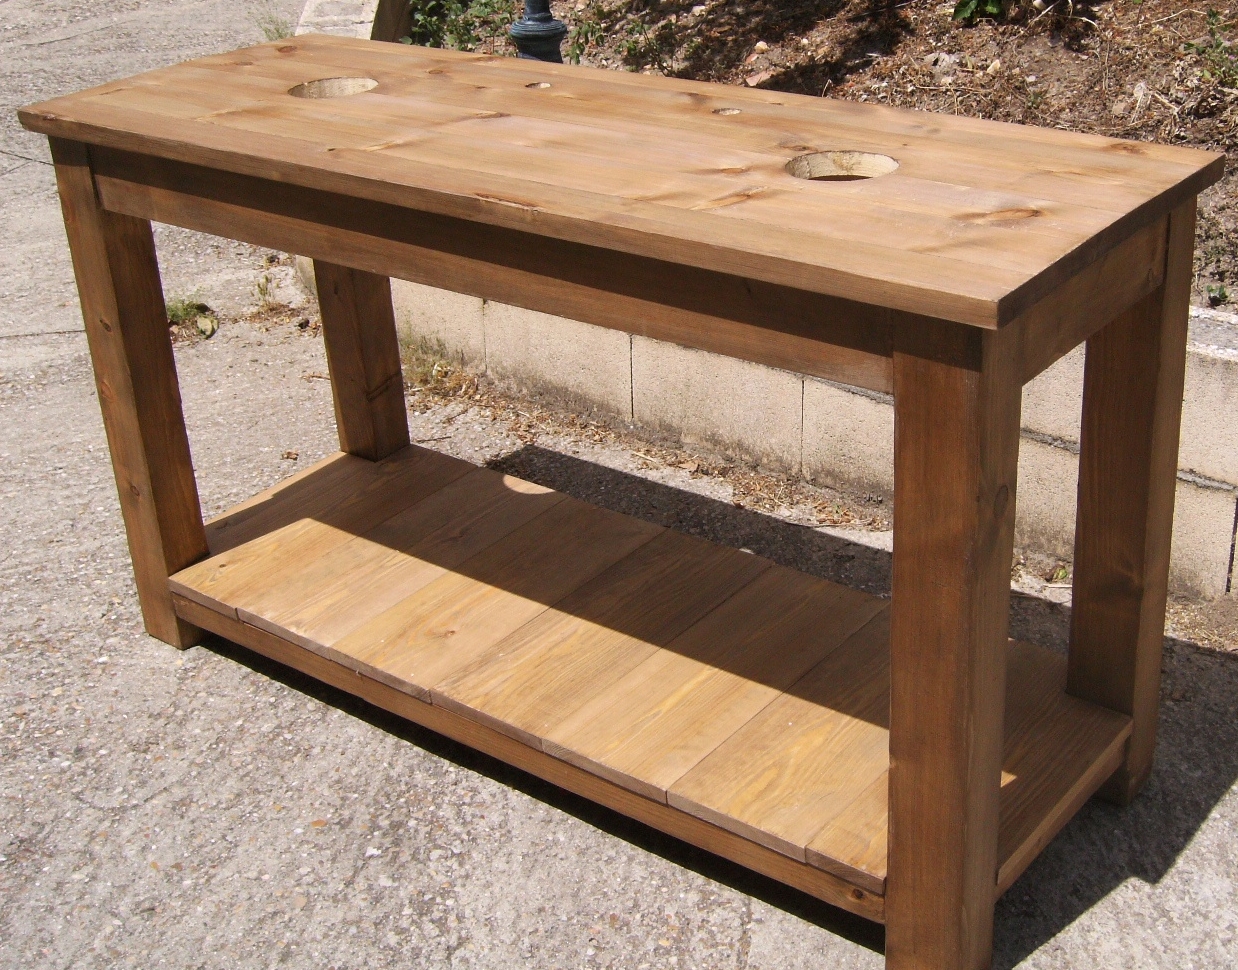 Mesa lavabo de madera: Diseño y estilo para el baño